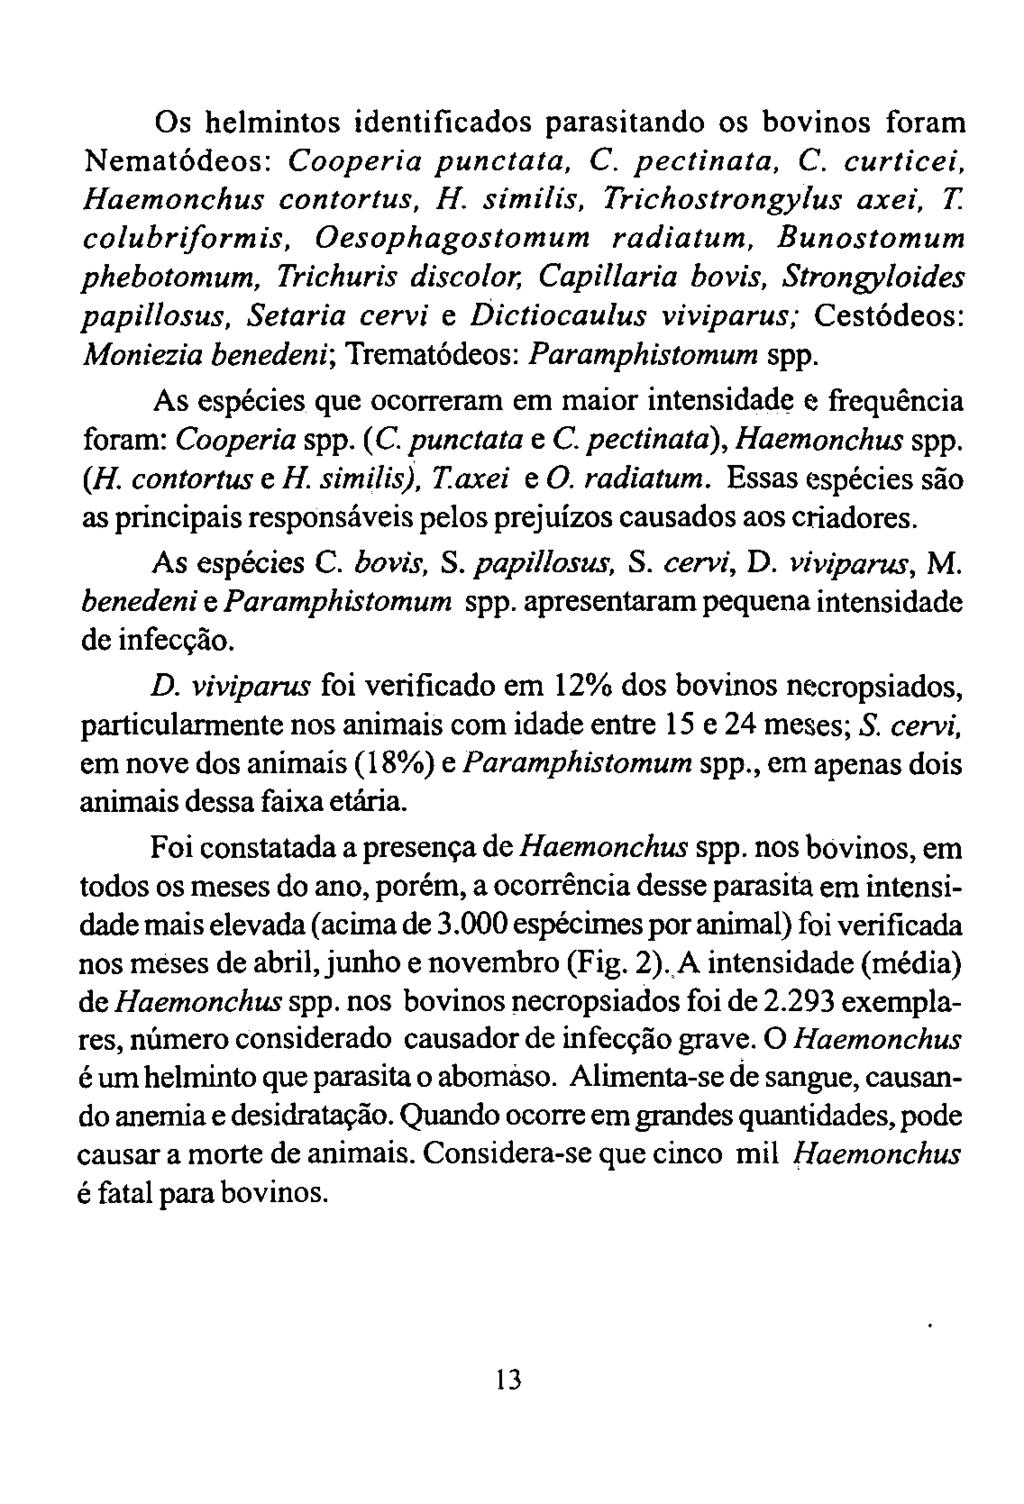 Os helmintos identificados parasitando os bovinos foram Nematódeos: Cooperia punctata, C. pectinata, C. curticei, Haemonchus contortus, H.